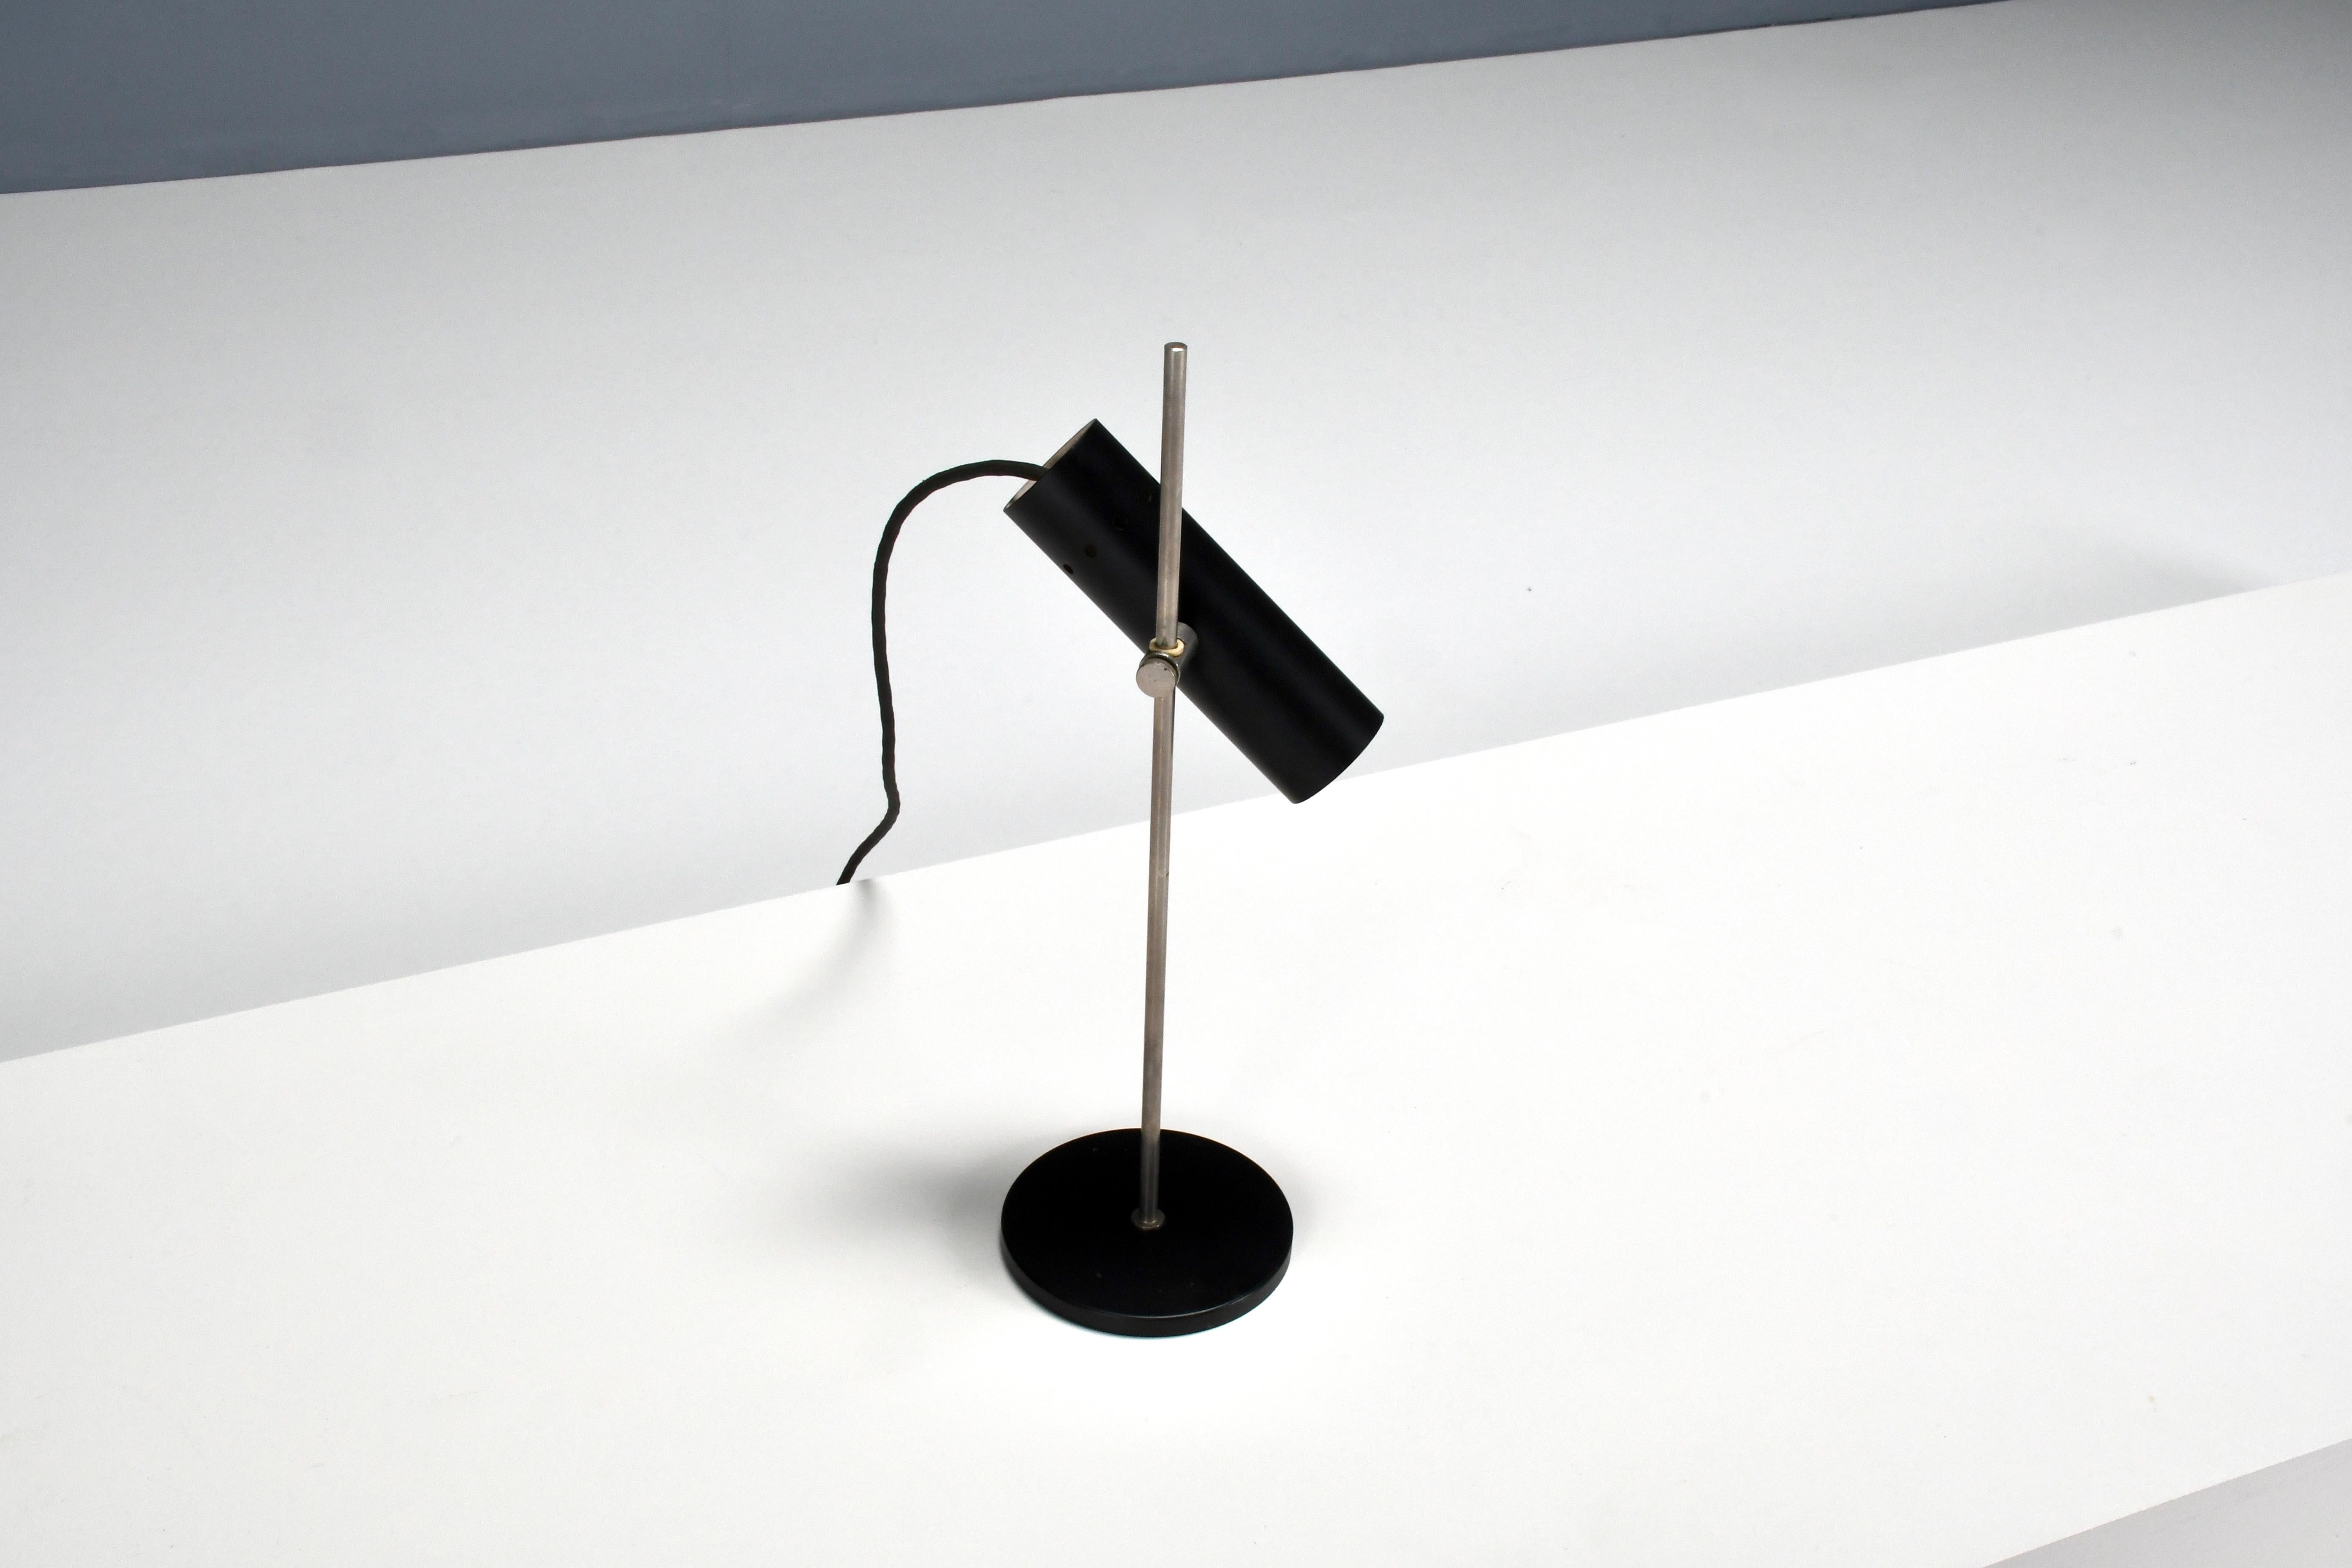 Kompakte minimalistische französische Tischlampe in gutem Zustand. 

Entworfen von Alain Richard in den 1950er Jahren 

Hergestellt von Disderot

Die Lampe hat einen schwarz lackierten Metallsockel, der einen verchromten Stiel trägt.

Mit